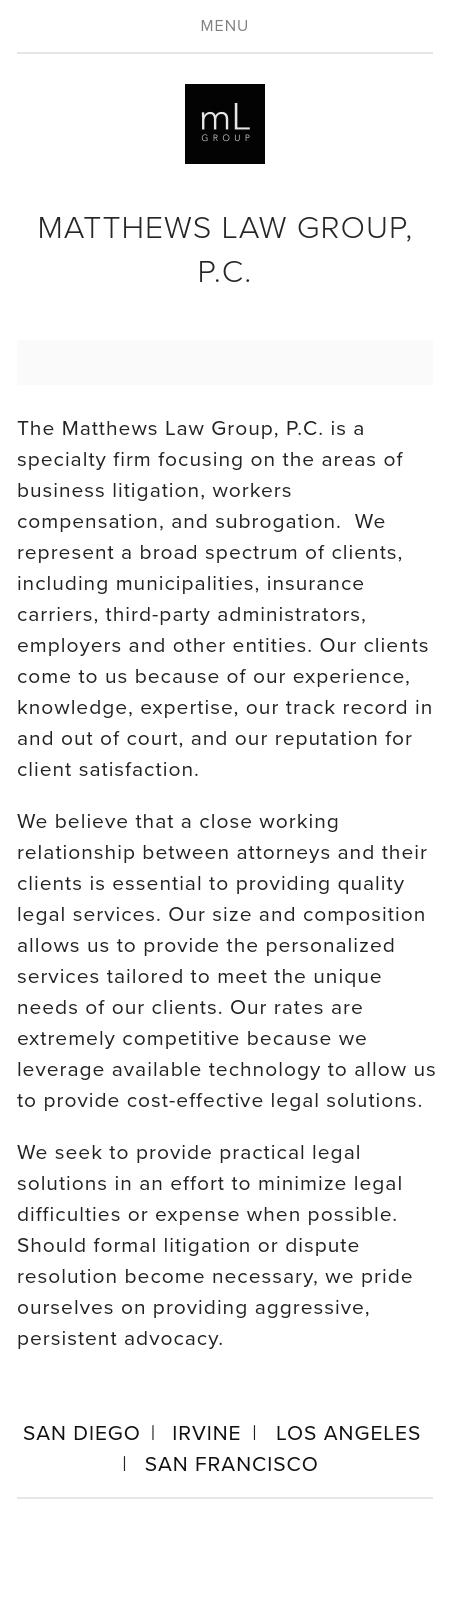 Matthews Law Group, P.C. - Dallas TX Lawyers